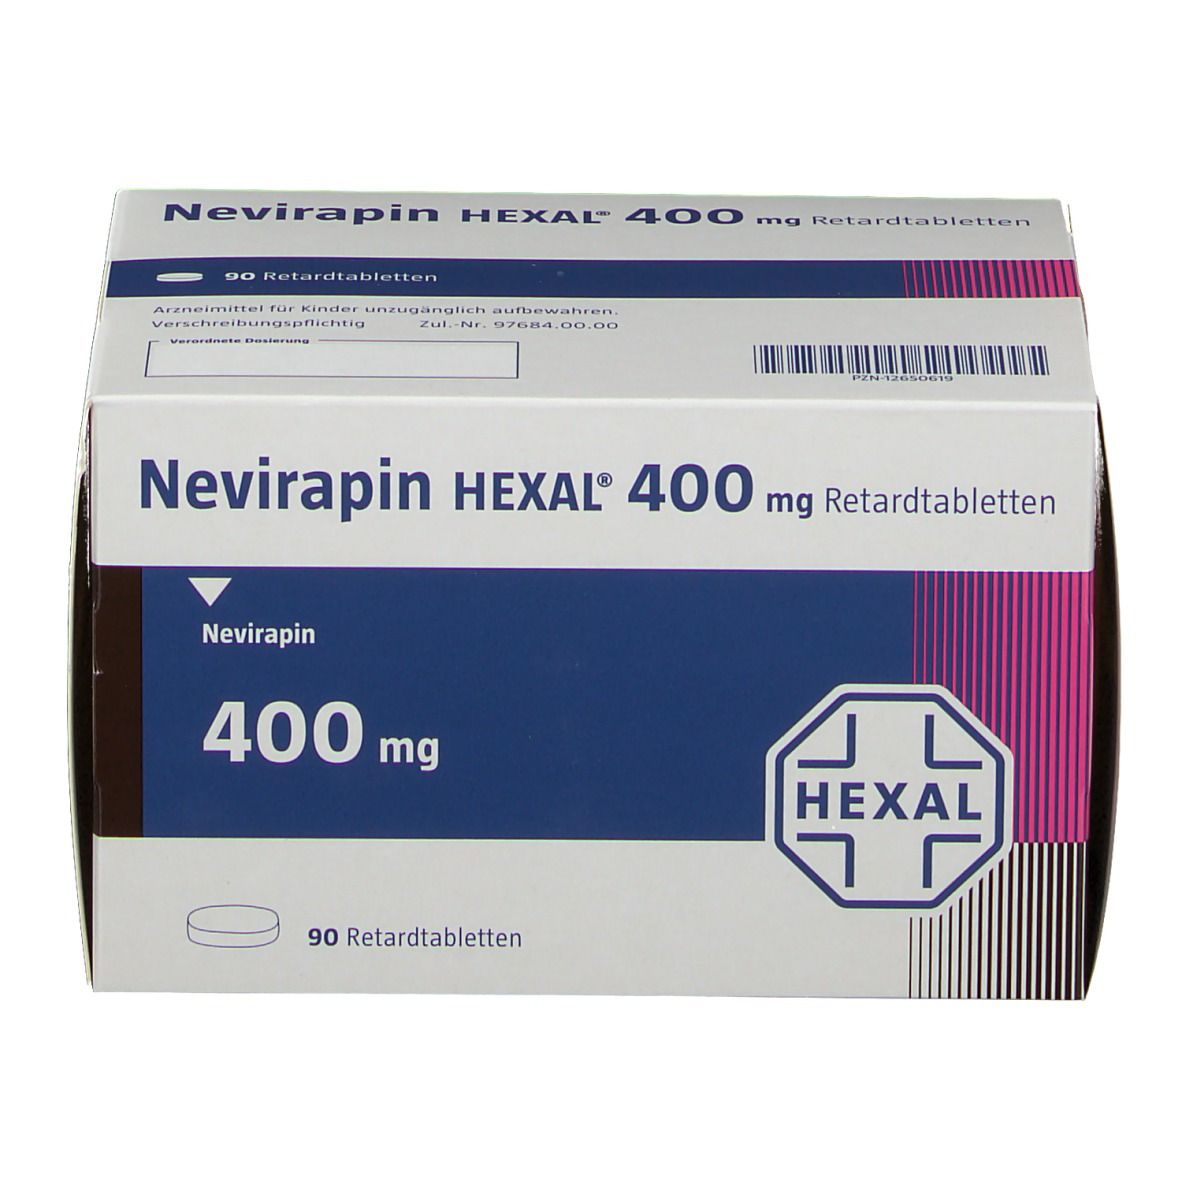 Nevirapin HEXAL® 400 mg